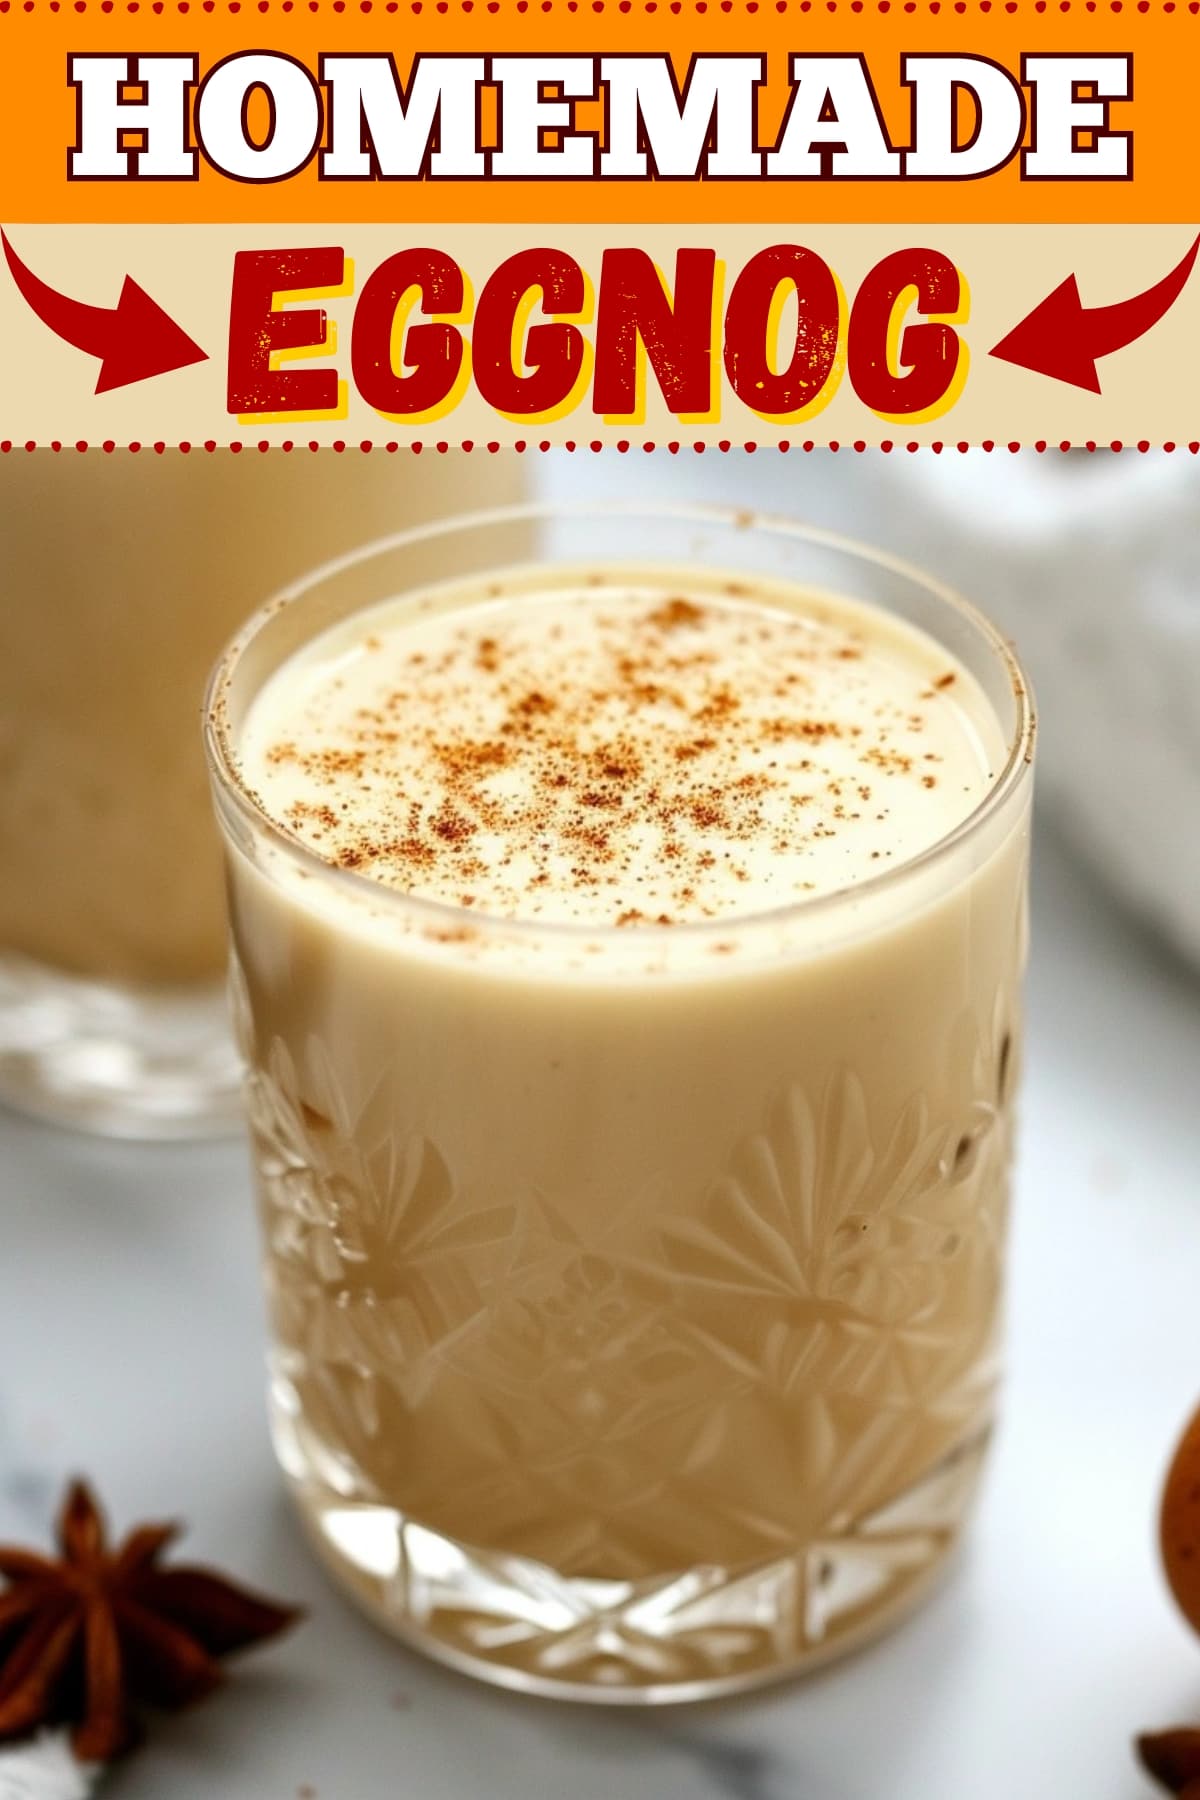 Homemade Eggnog